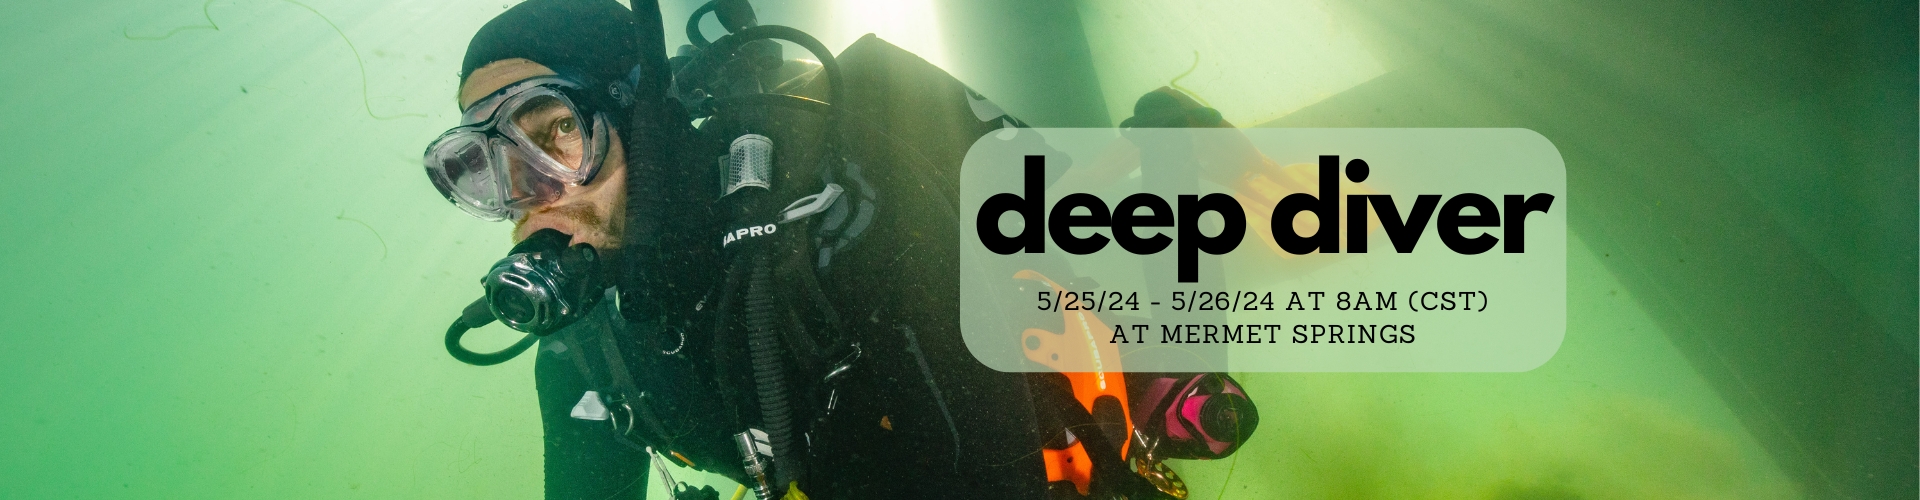 5/25 Deep Diver